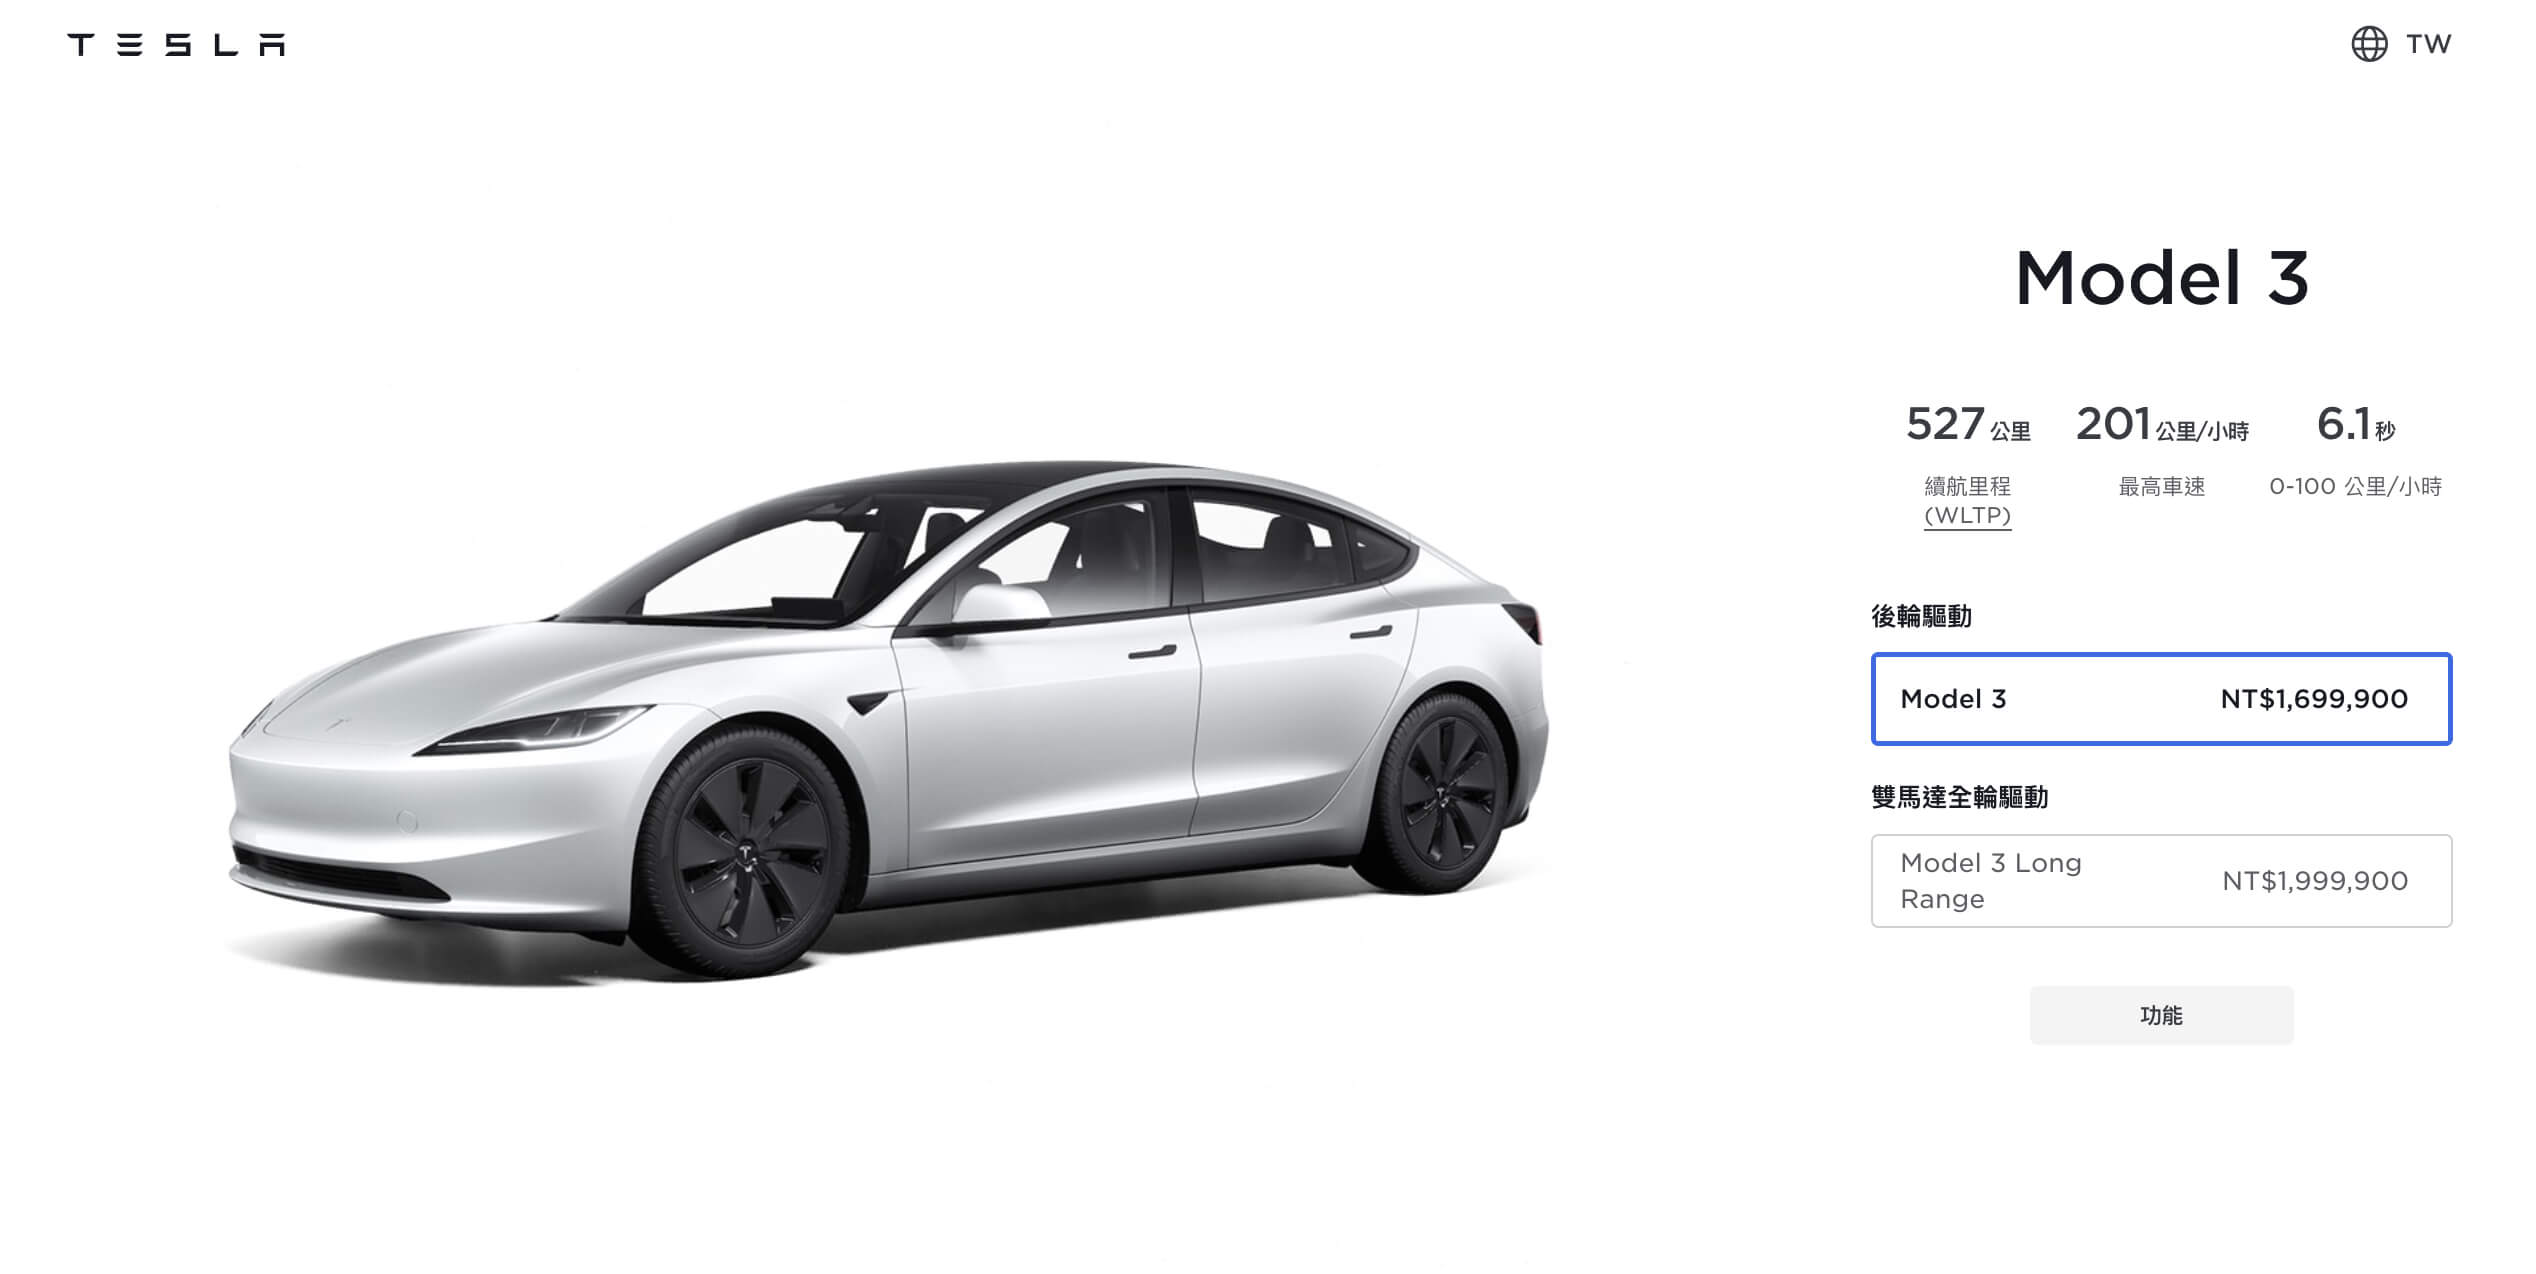 Tesla запускает обновленную Model 3 на Тайване, доставленную из США